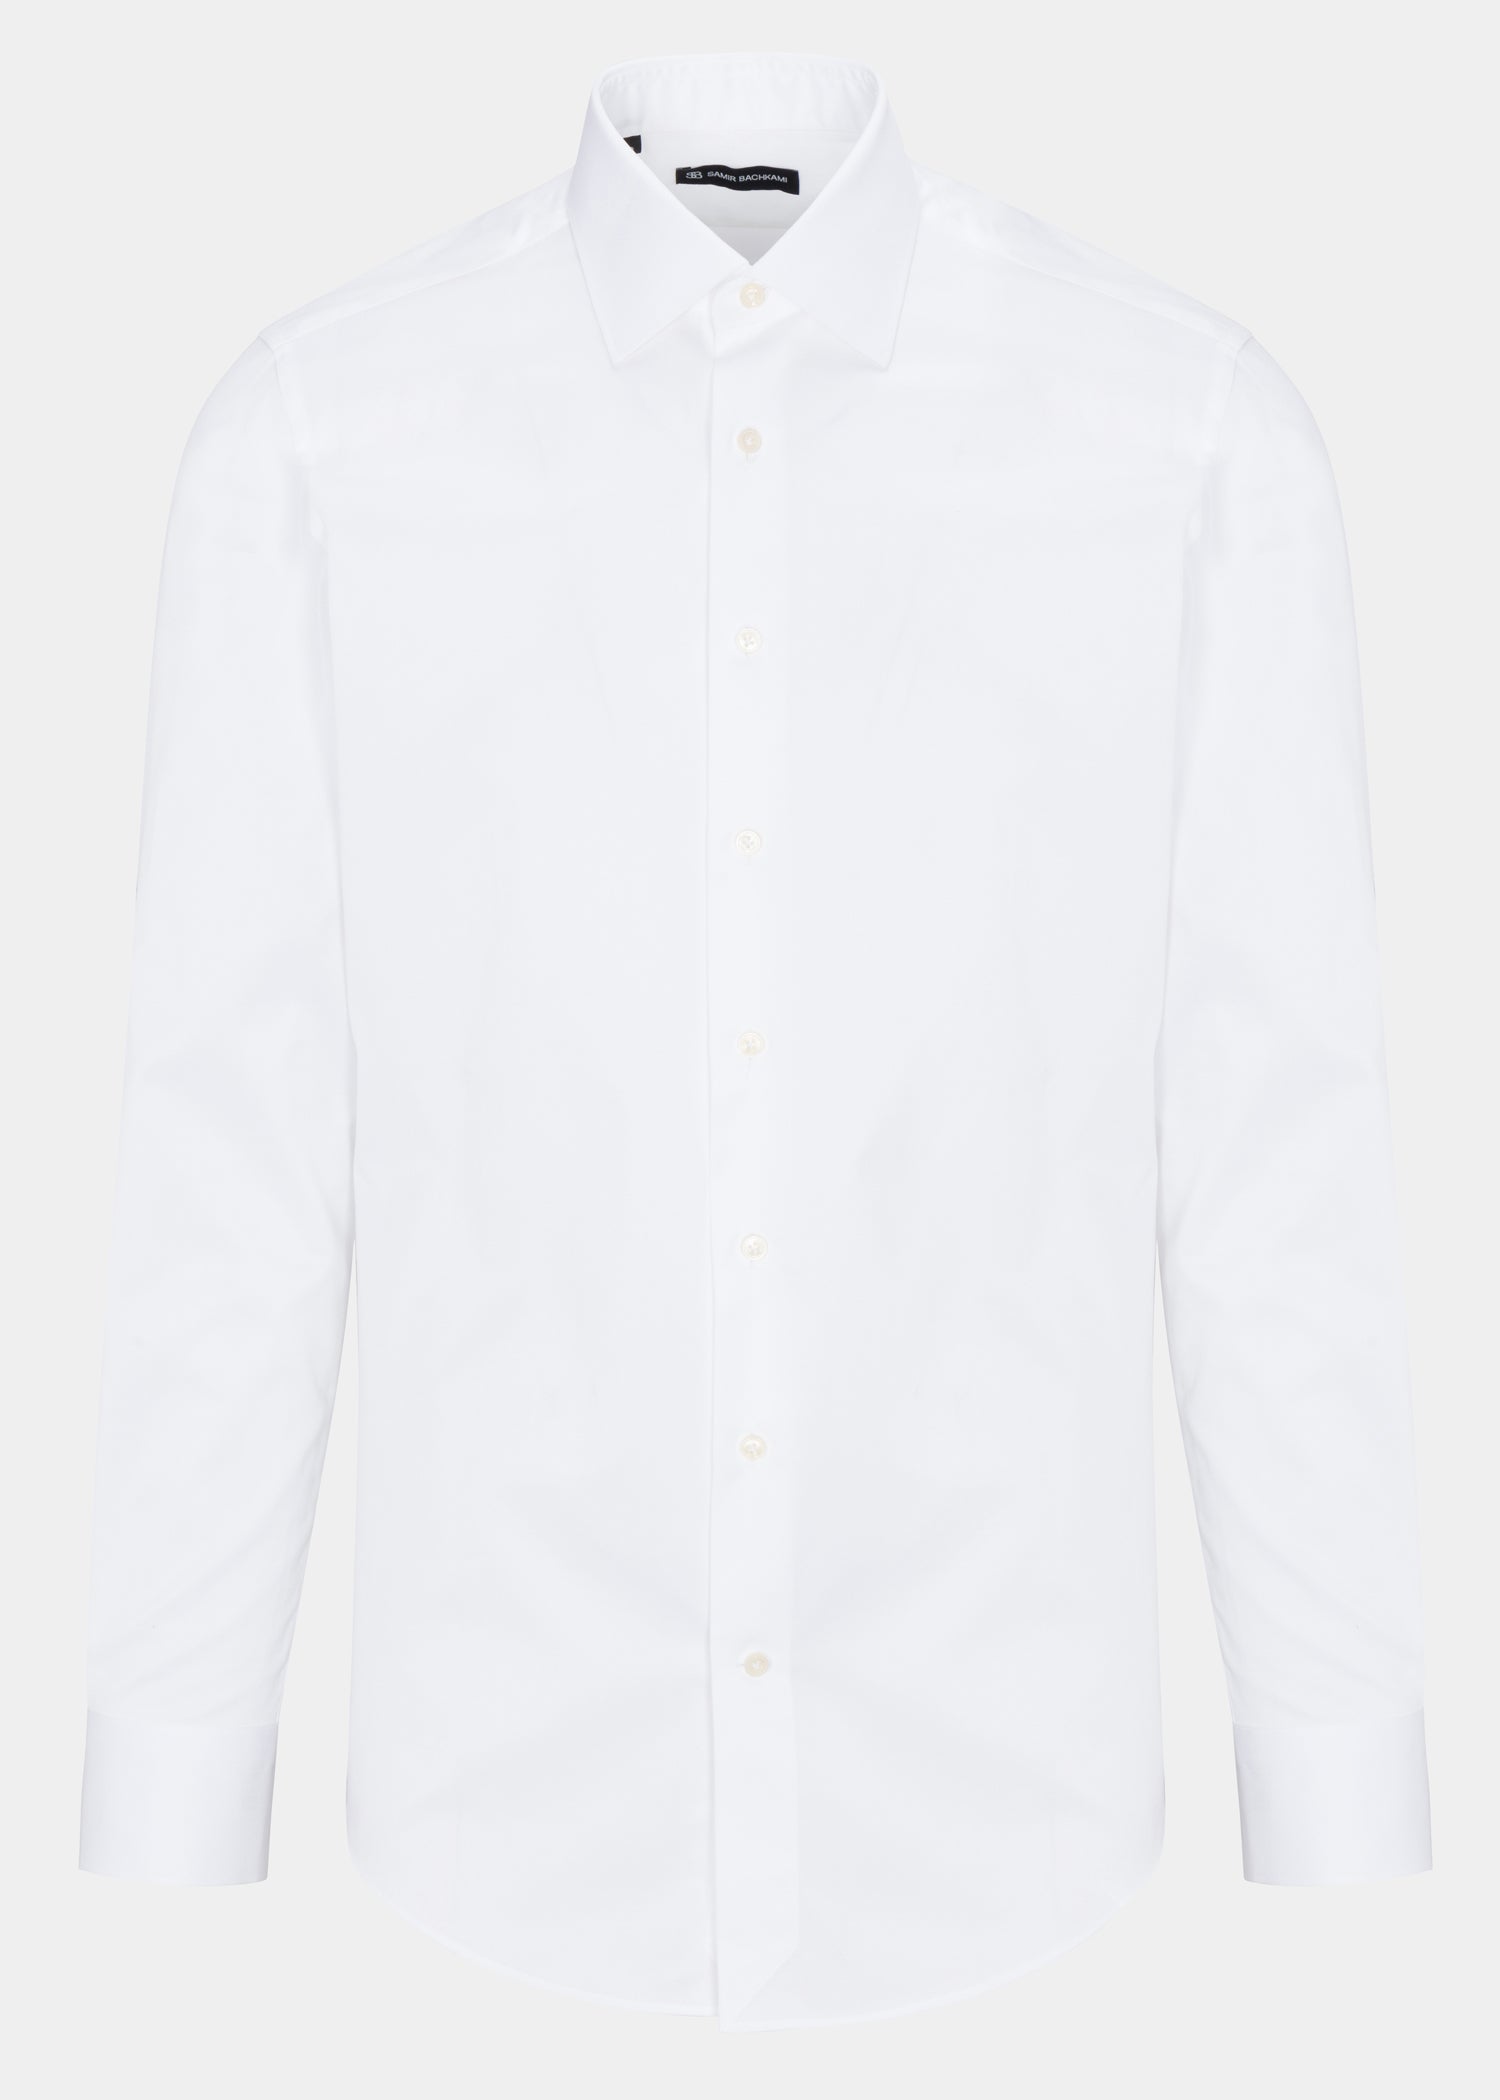 White Textured Slim Fit Shirt - Samir Bachkami